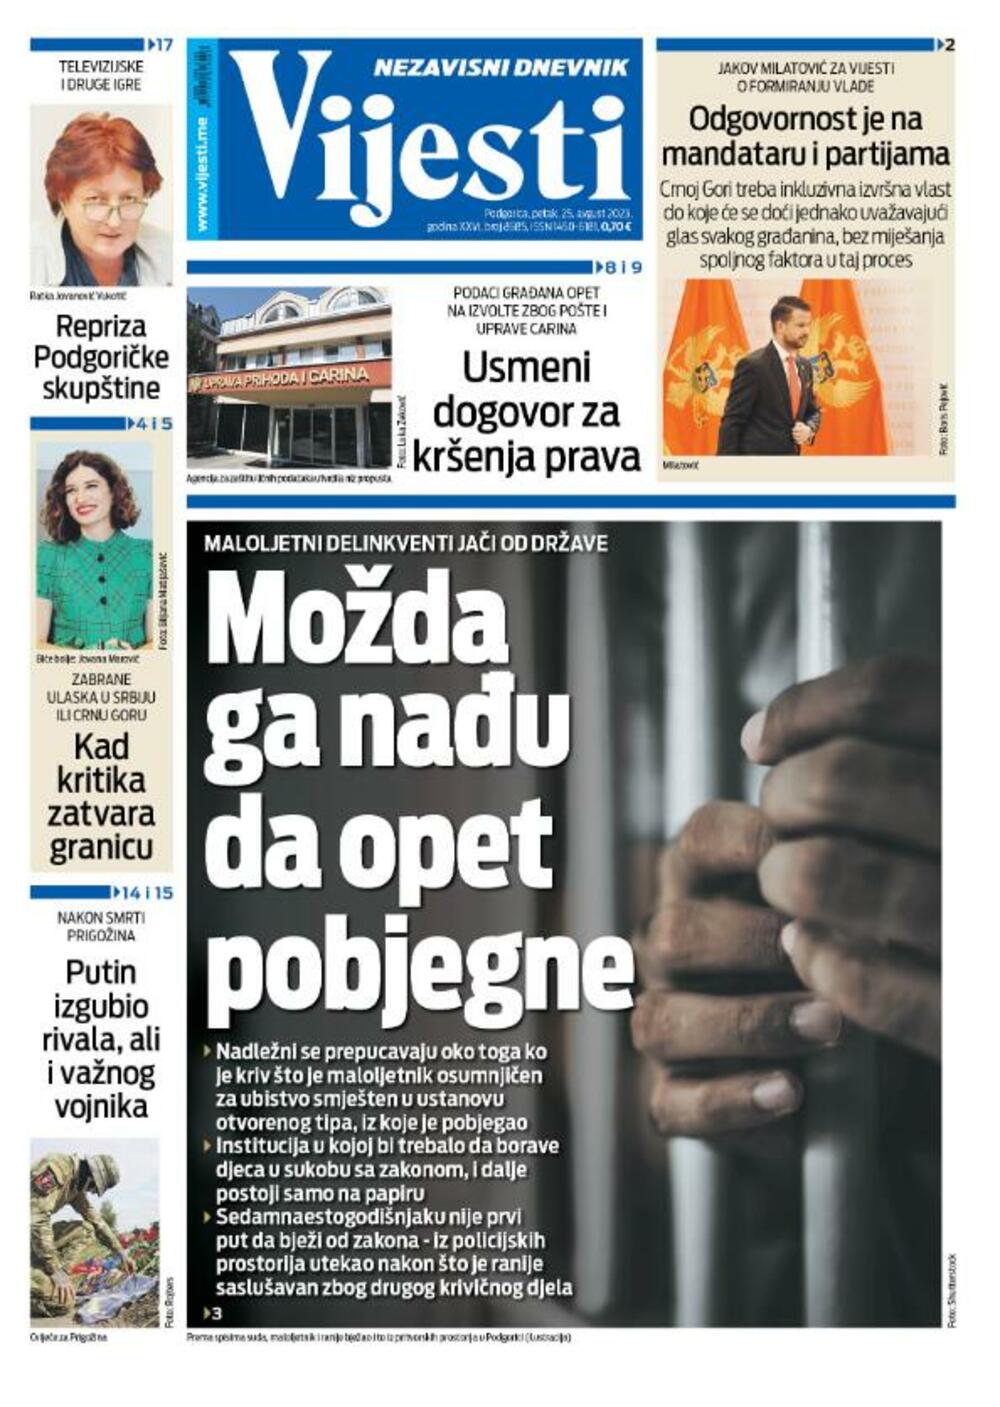 Naslovna strana "Vijesti" za 25. avgust 2023., Foto: Vijesti